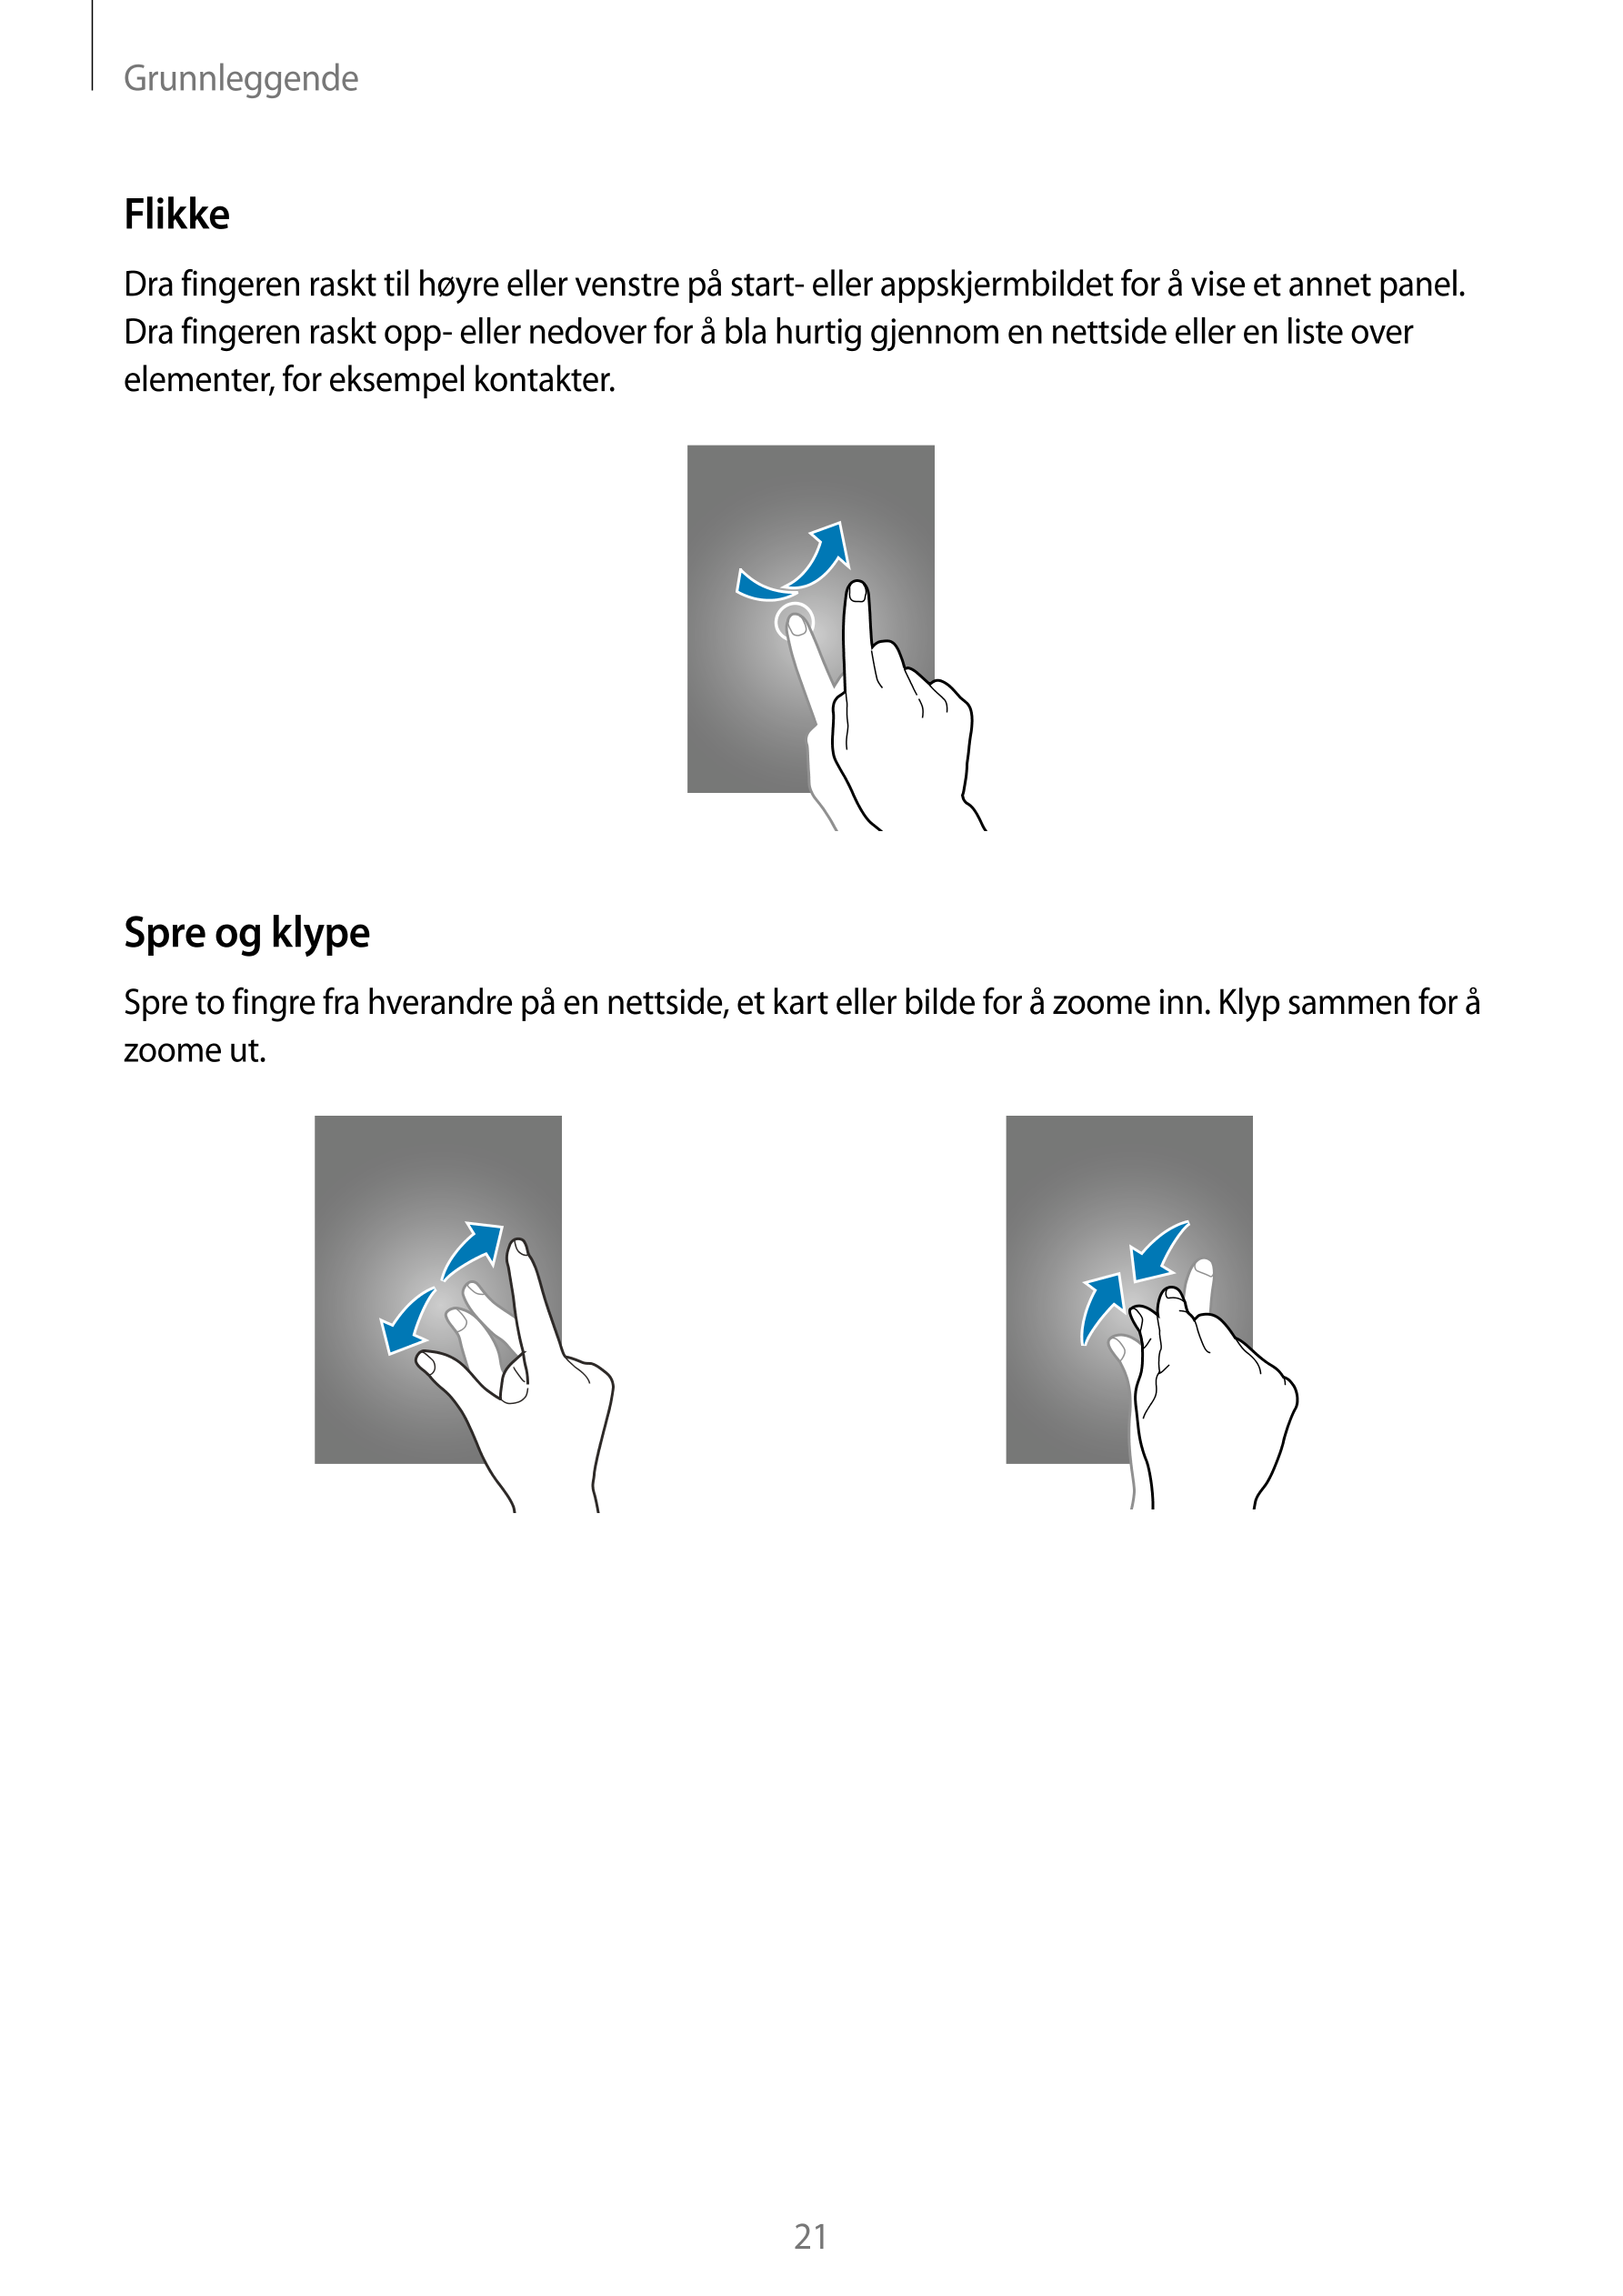 Grunnleggende
Flikke
Dra fingeren raskt til høyre eller venstre på start- eller appskjermbildet for å vise et annet panel. 
Dra 